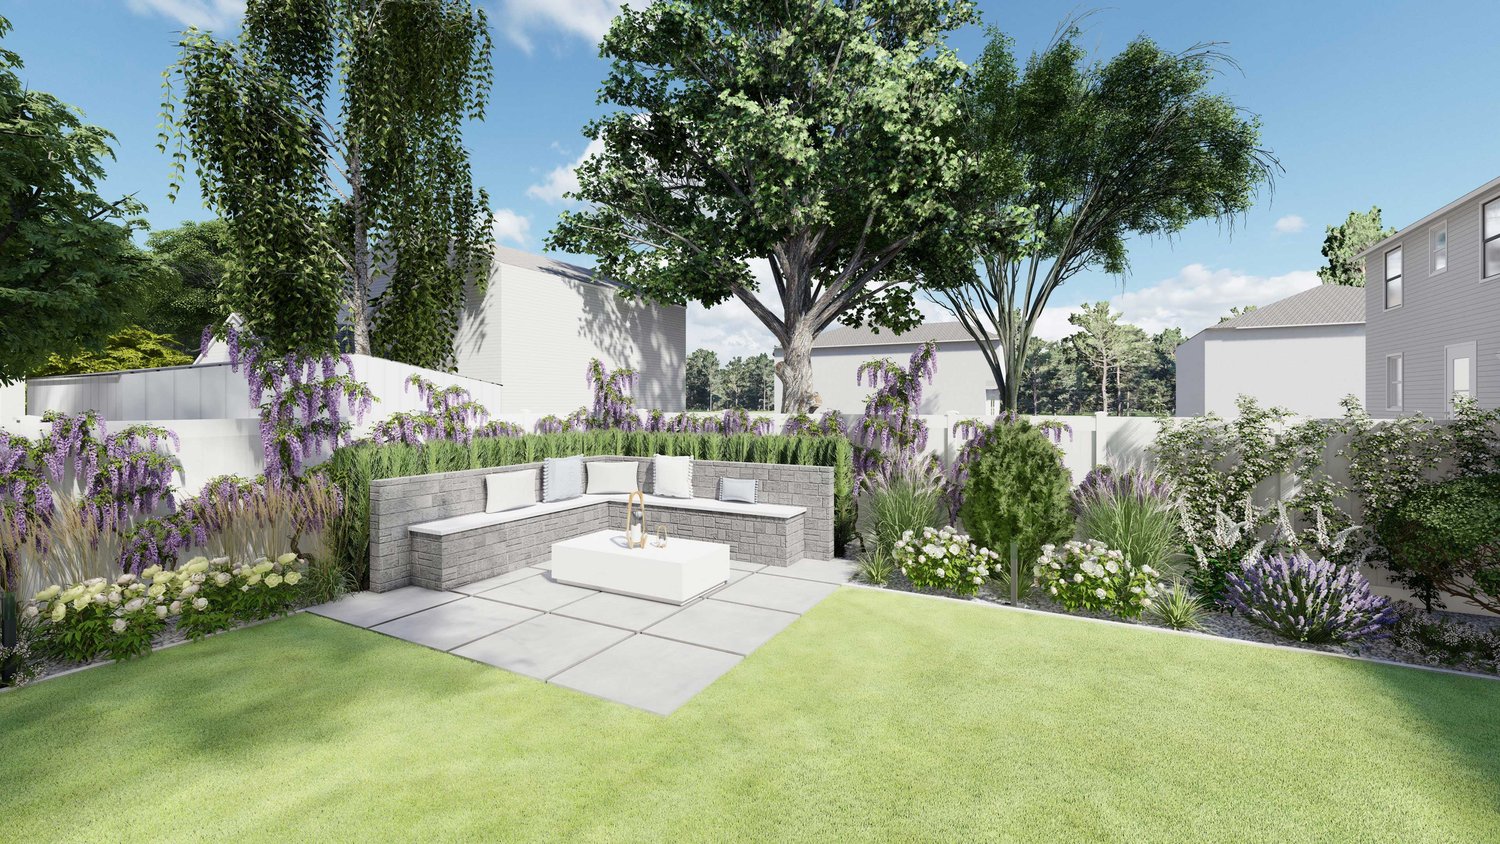 Ocean City paver patio lounge area in a backyard garden